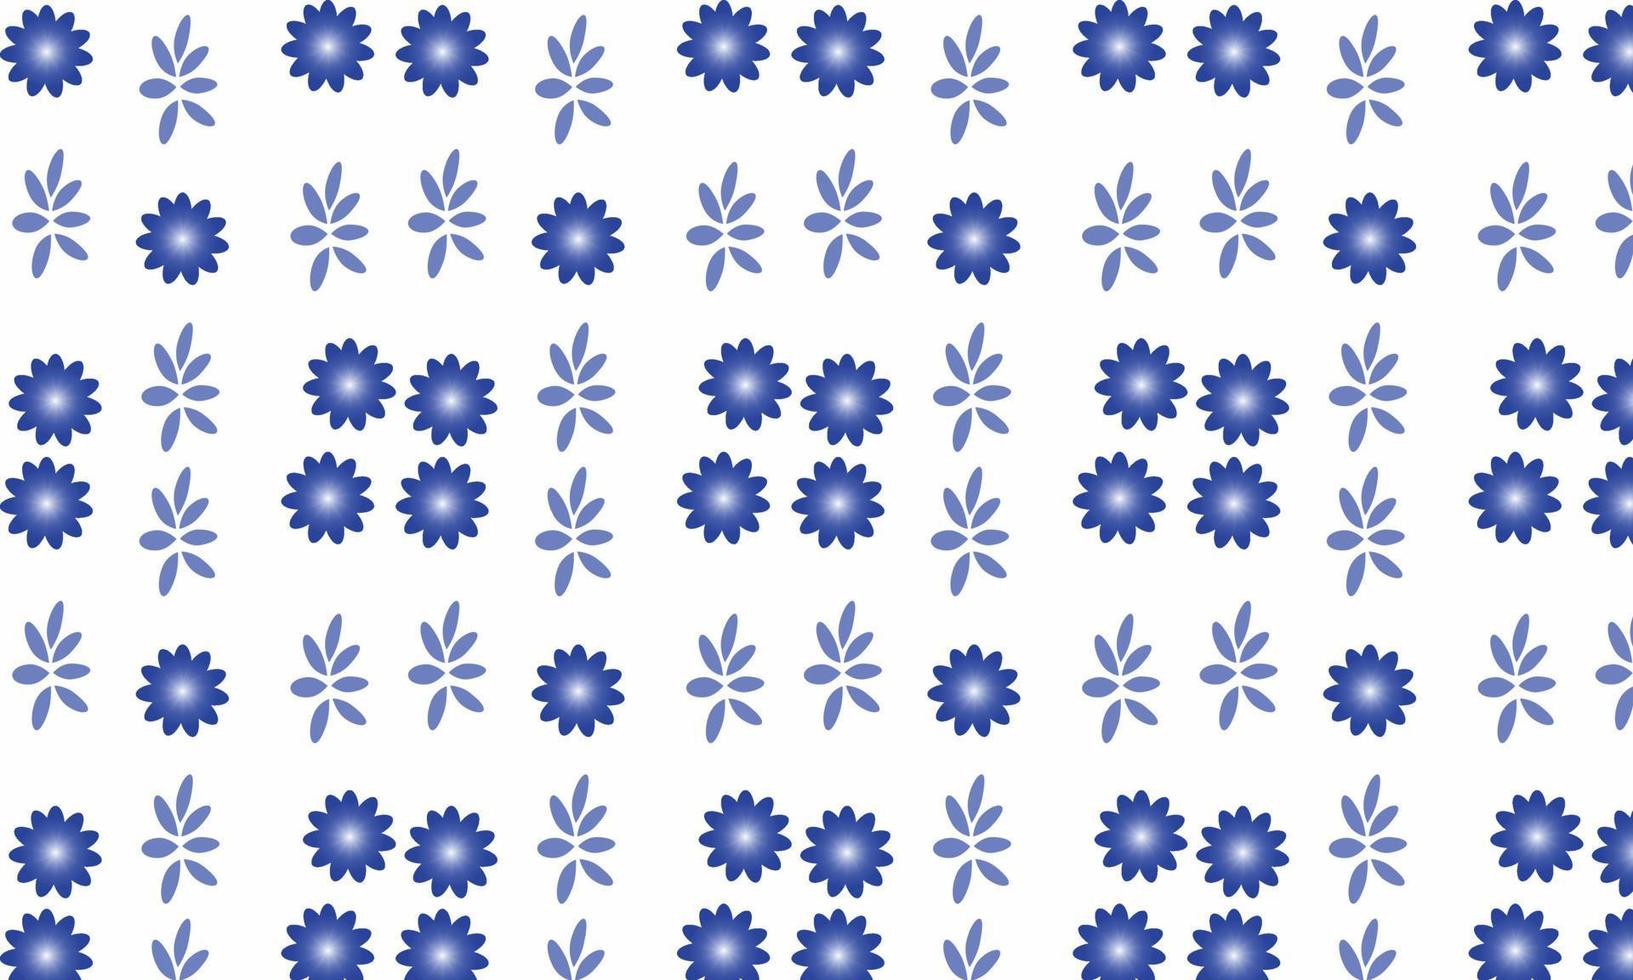 padrão sem emenda com flores azuis vetor